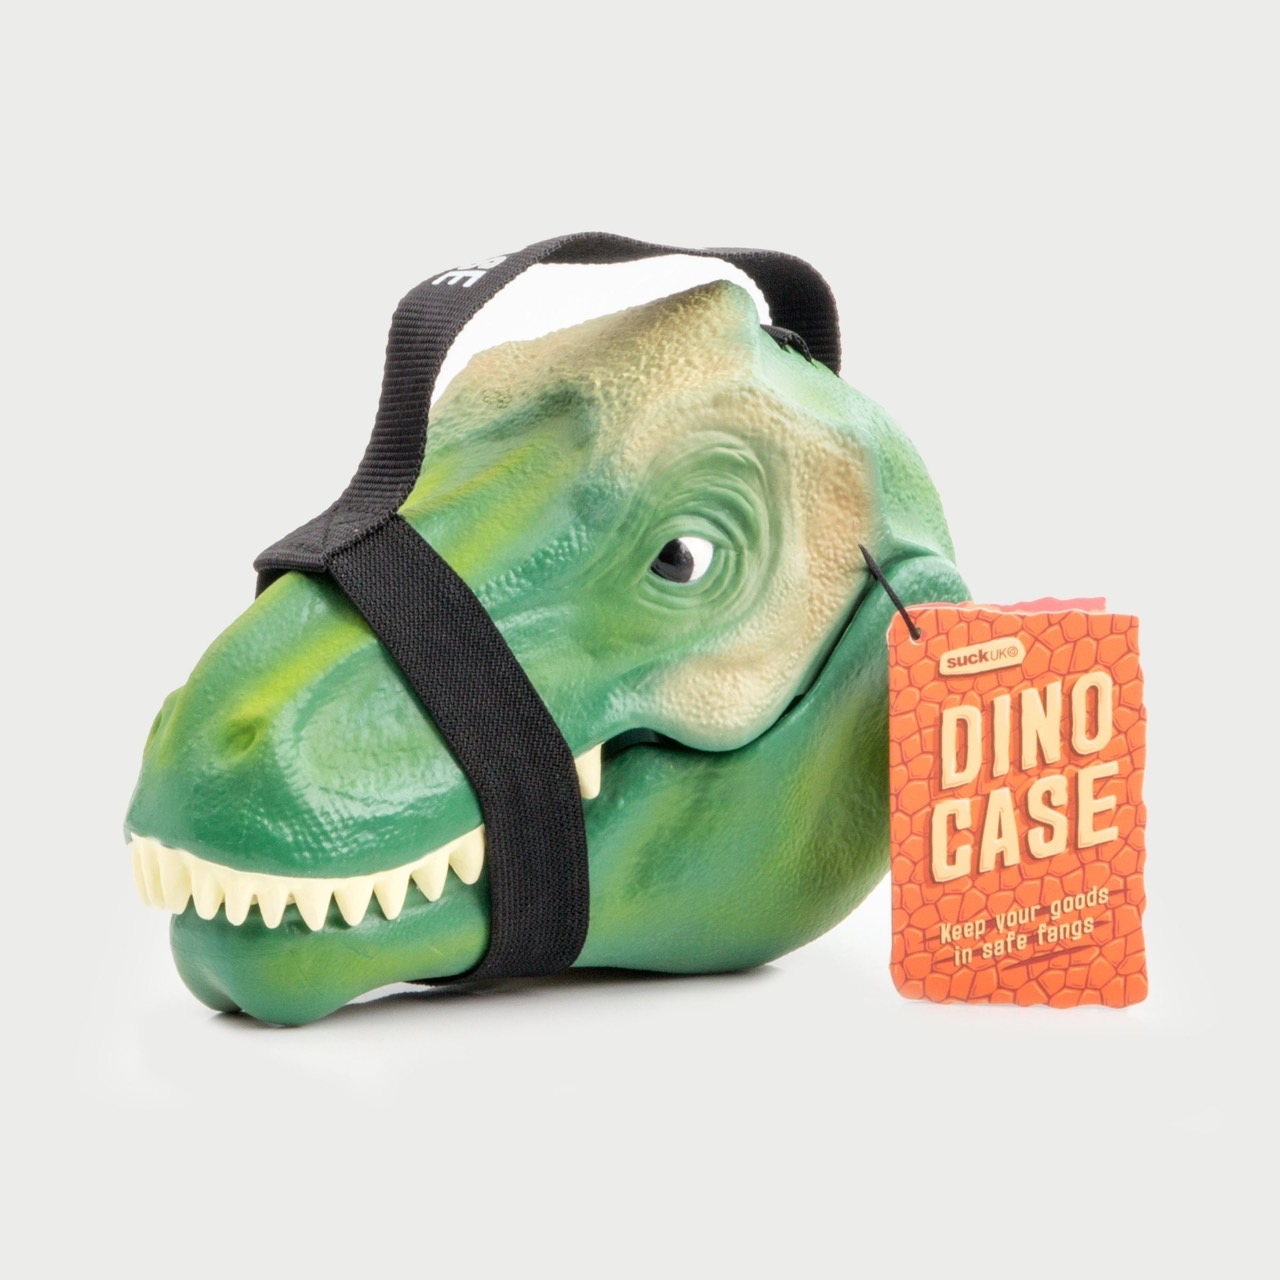 英國 Suck UK Dino Case恐龍造型手提盒